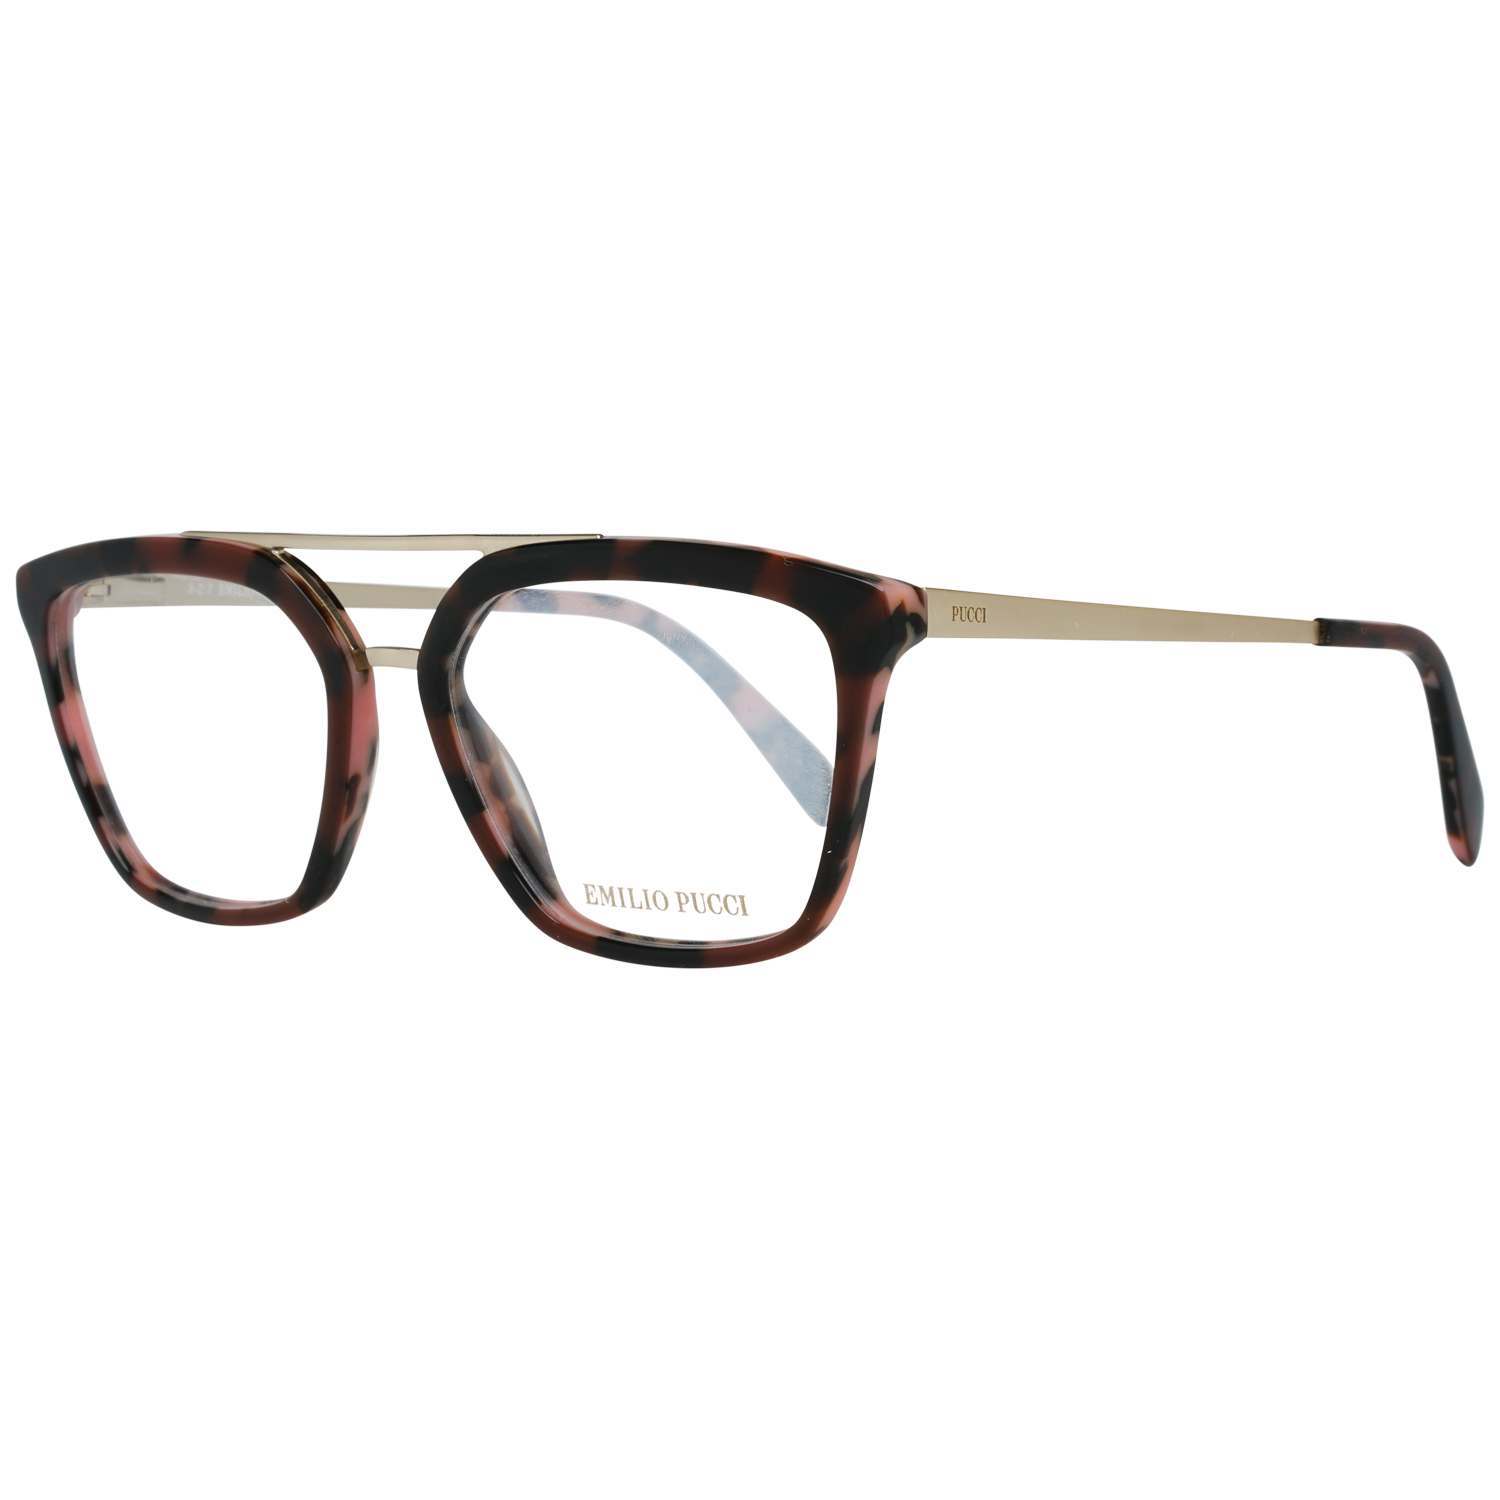 Emilio Pucci Frames Emilio Pucci Optical Frame EP5071 050 52 Eyeglasses Eyewear UK USA Australia 